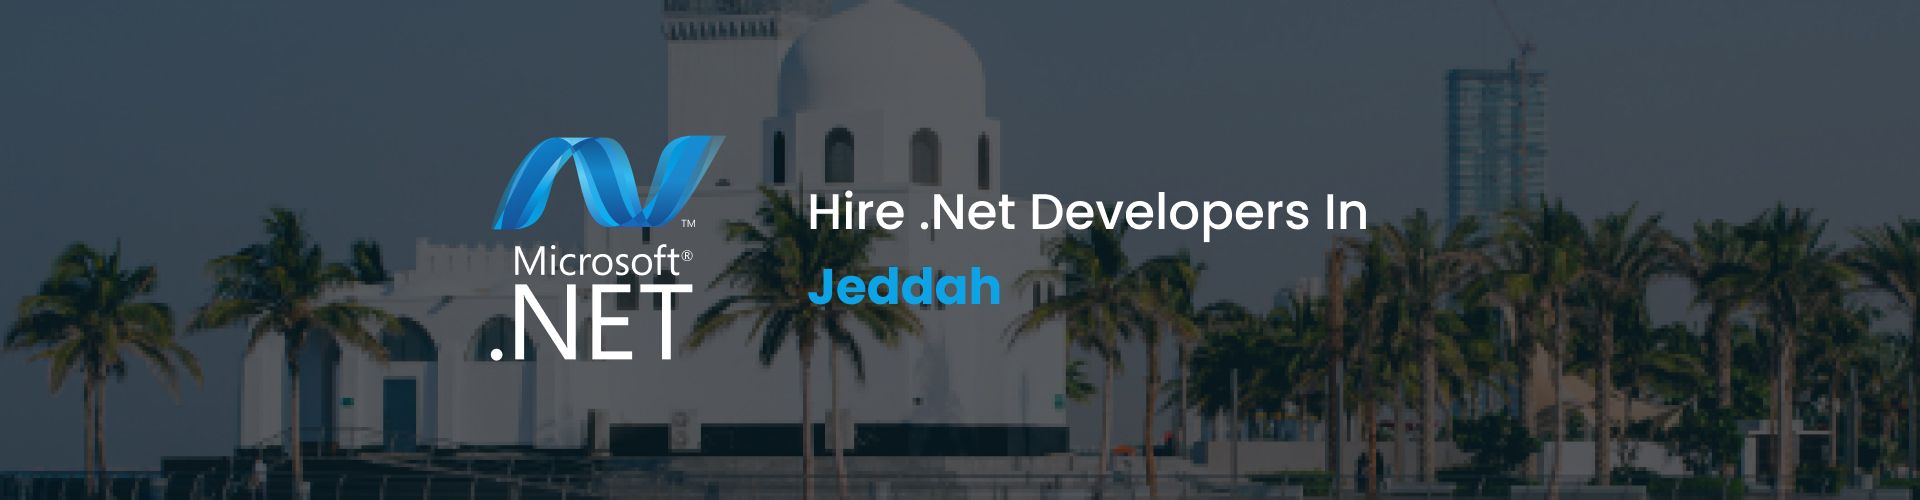 hire .net developers in jeddah